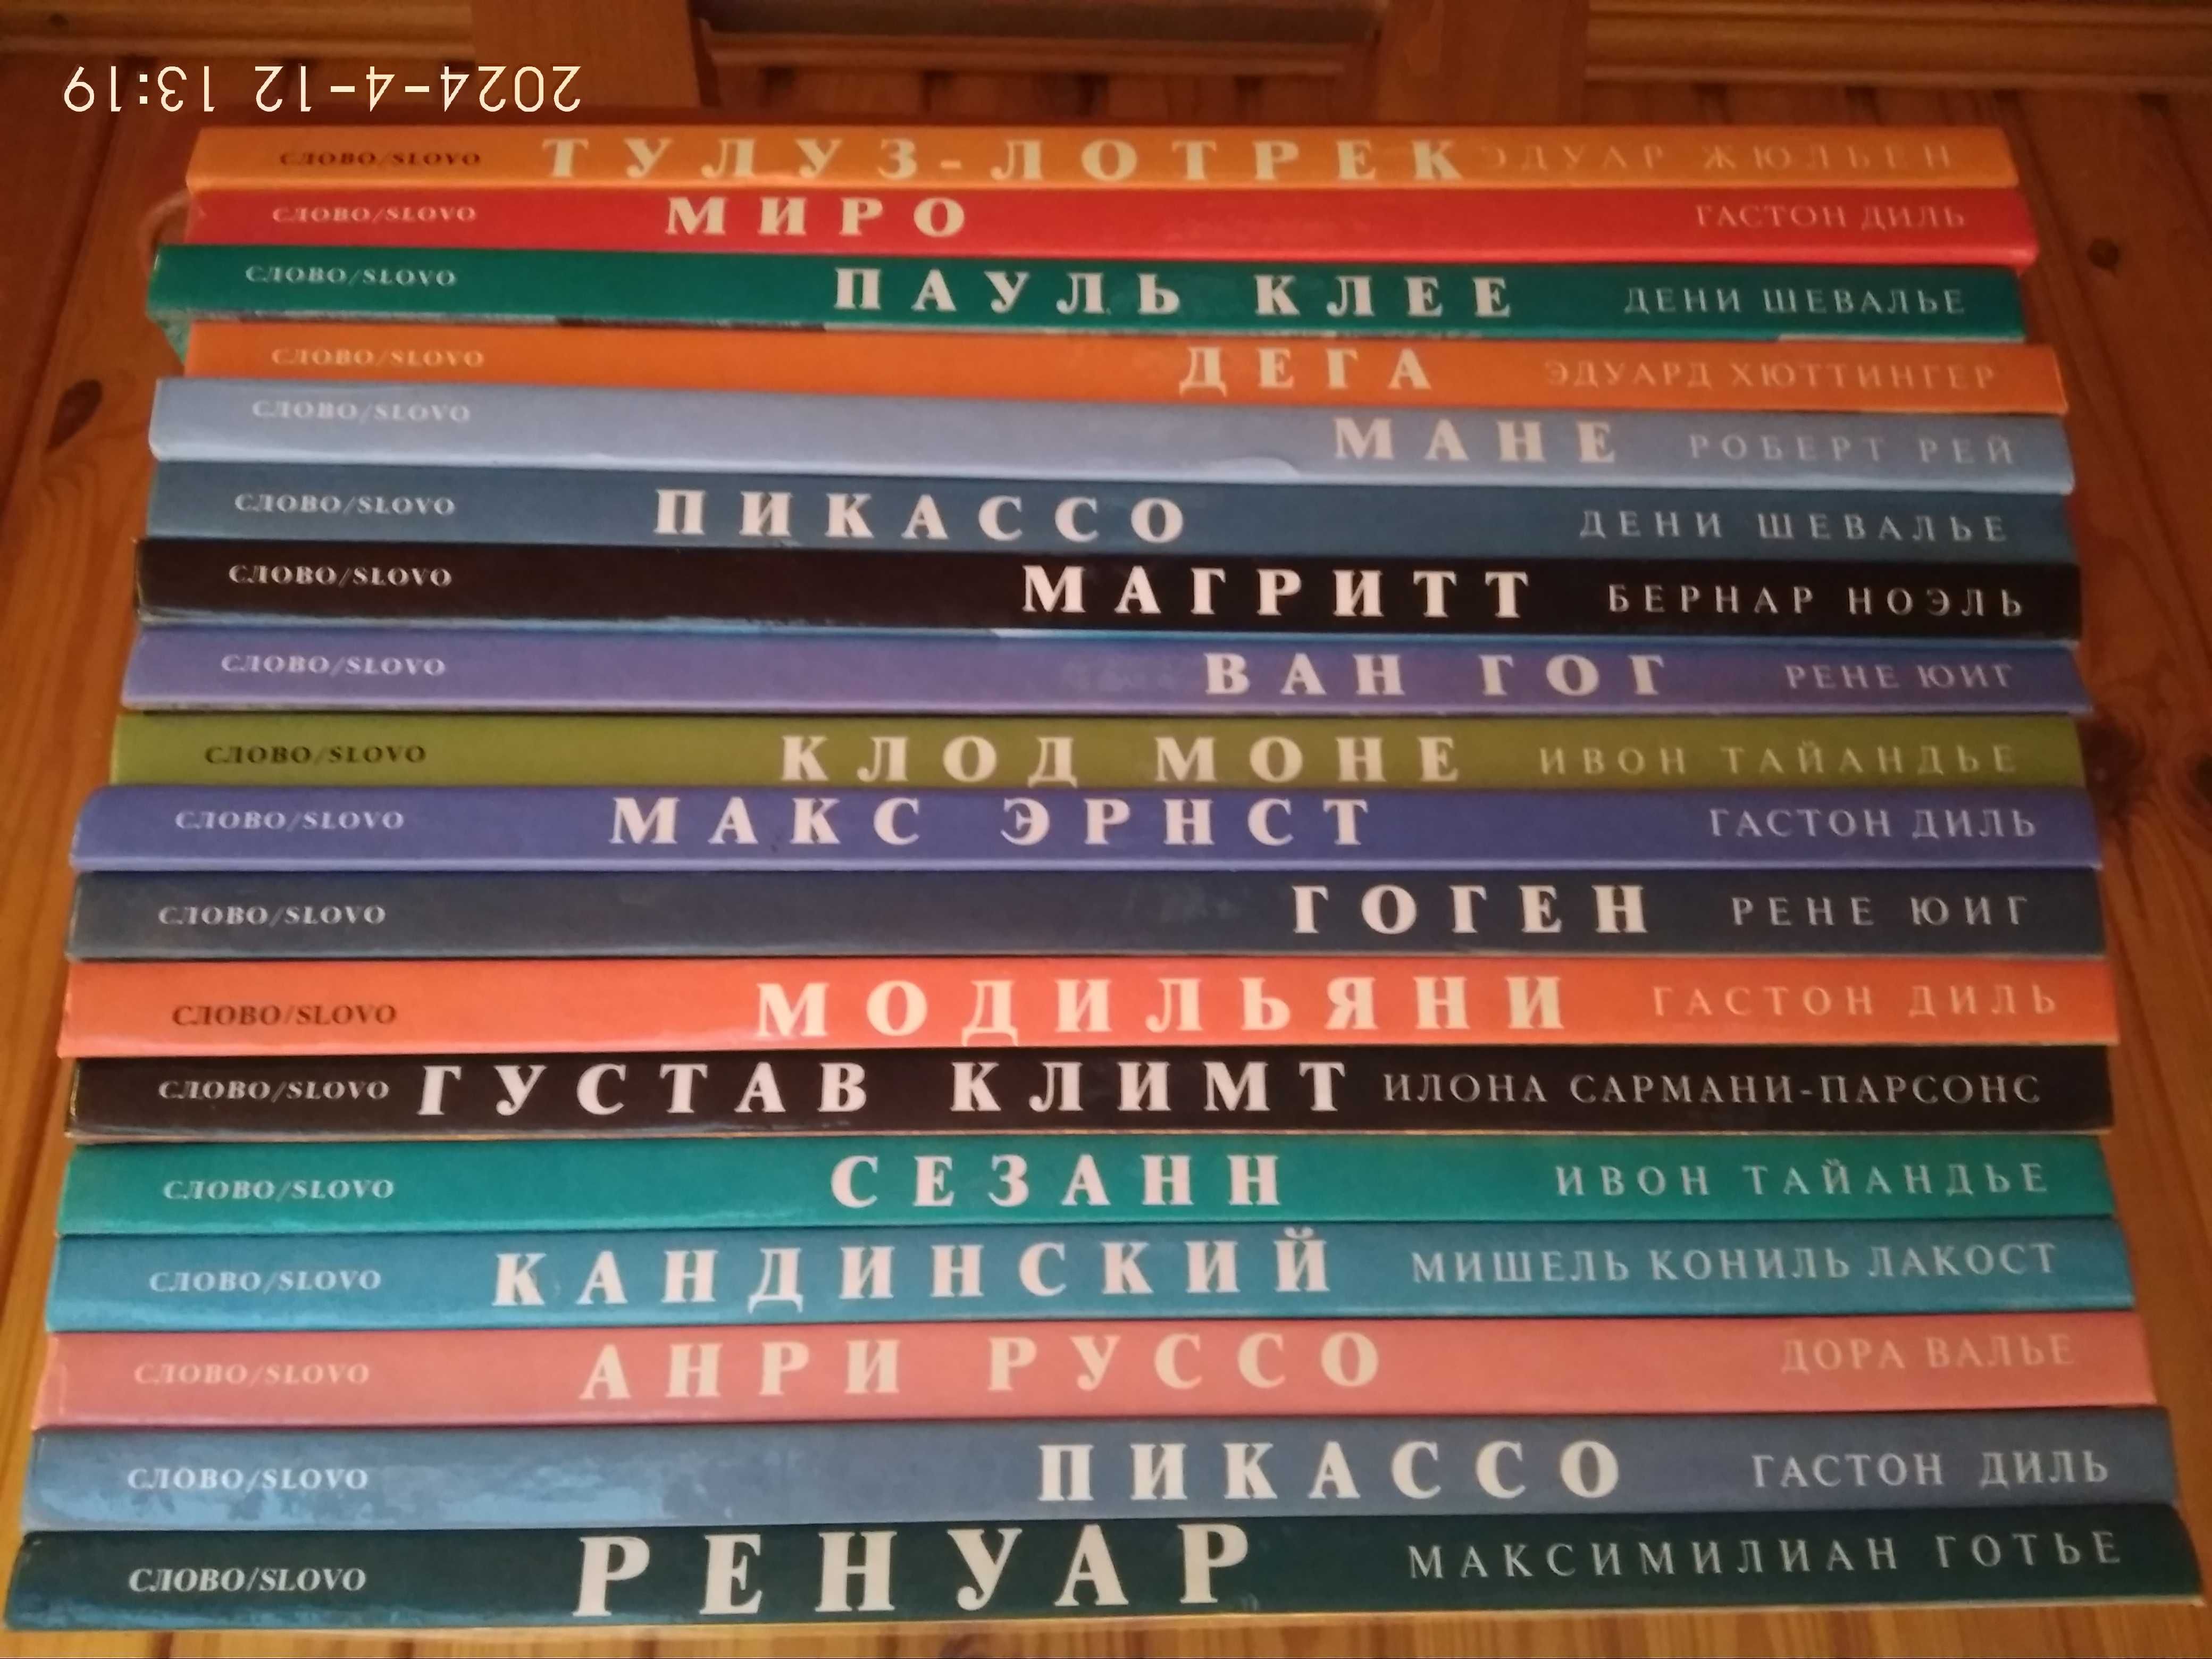 Серия альбомов-книг "Картинная галерея". 18 шт.